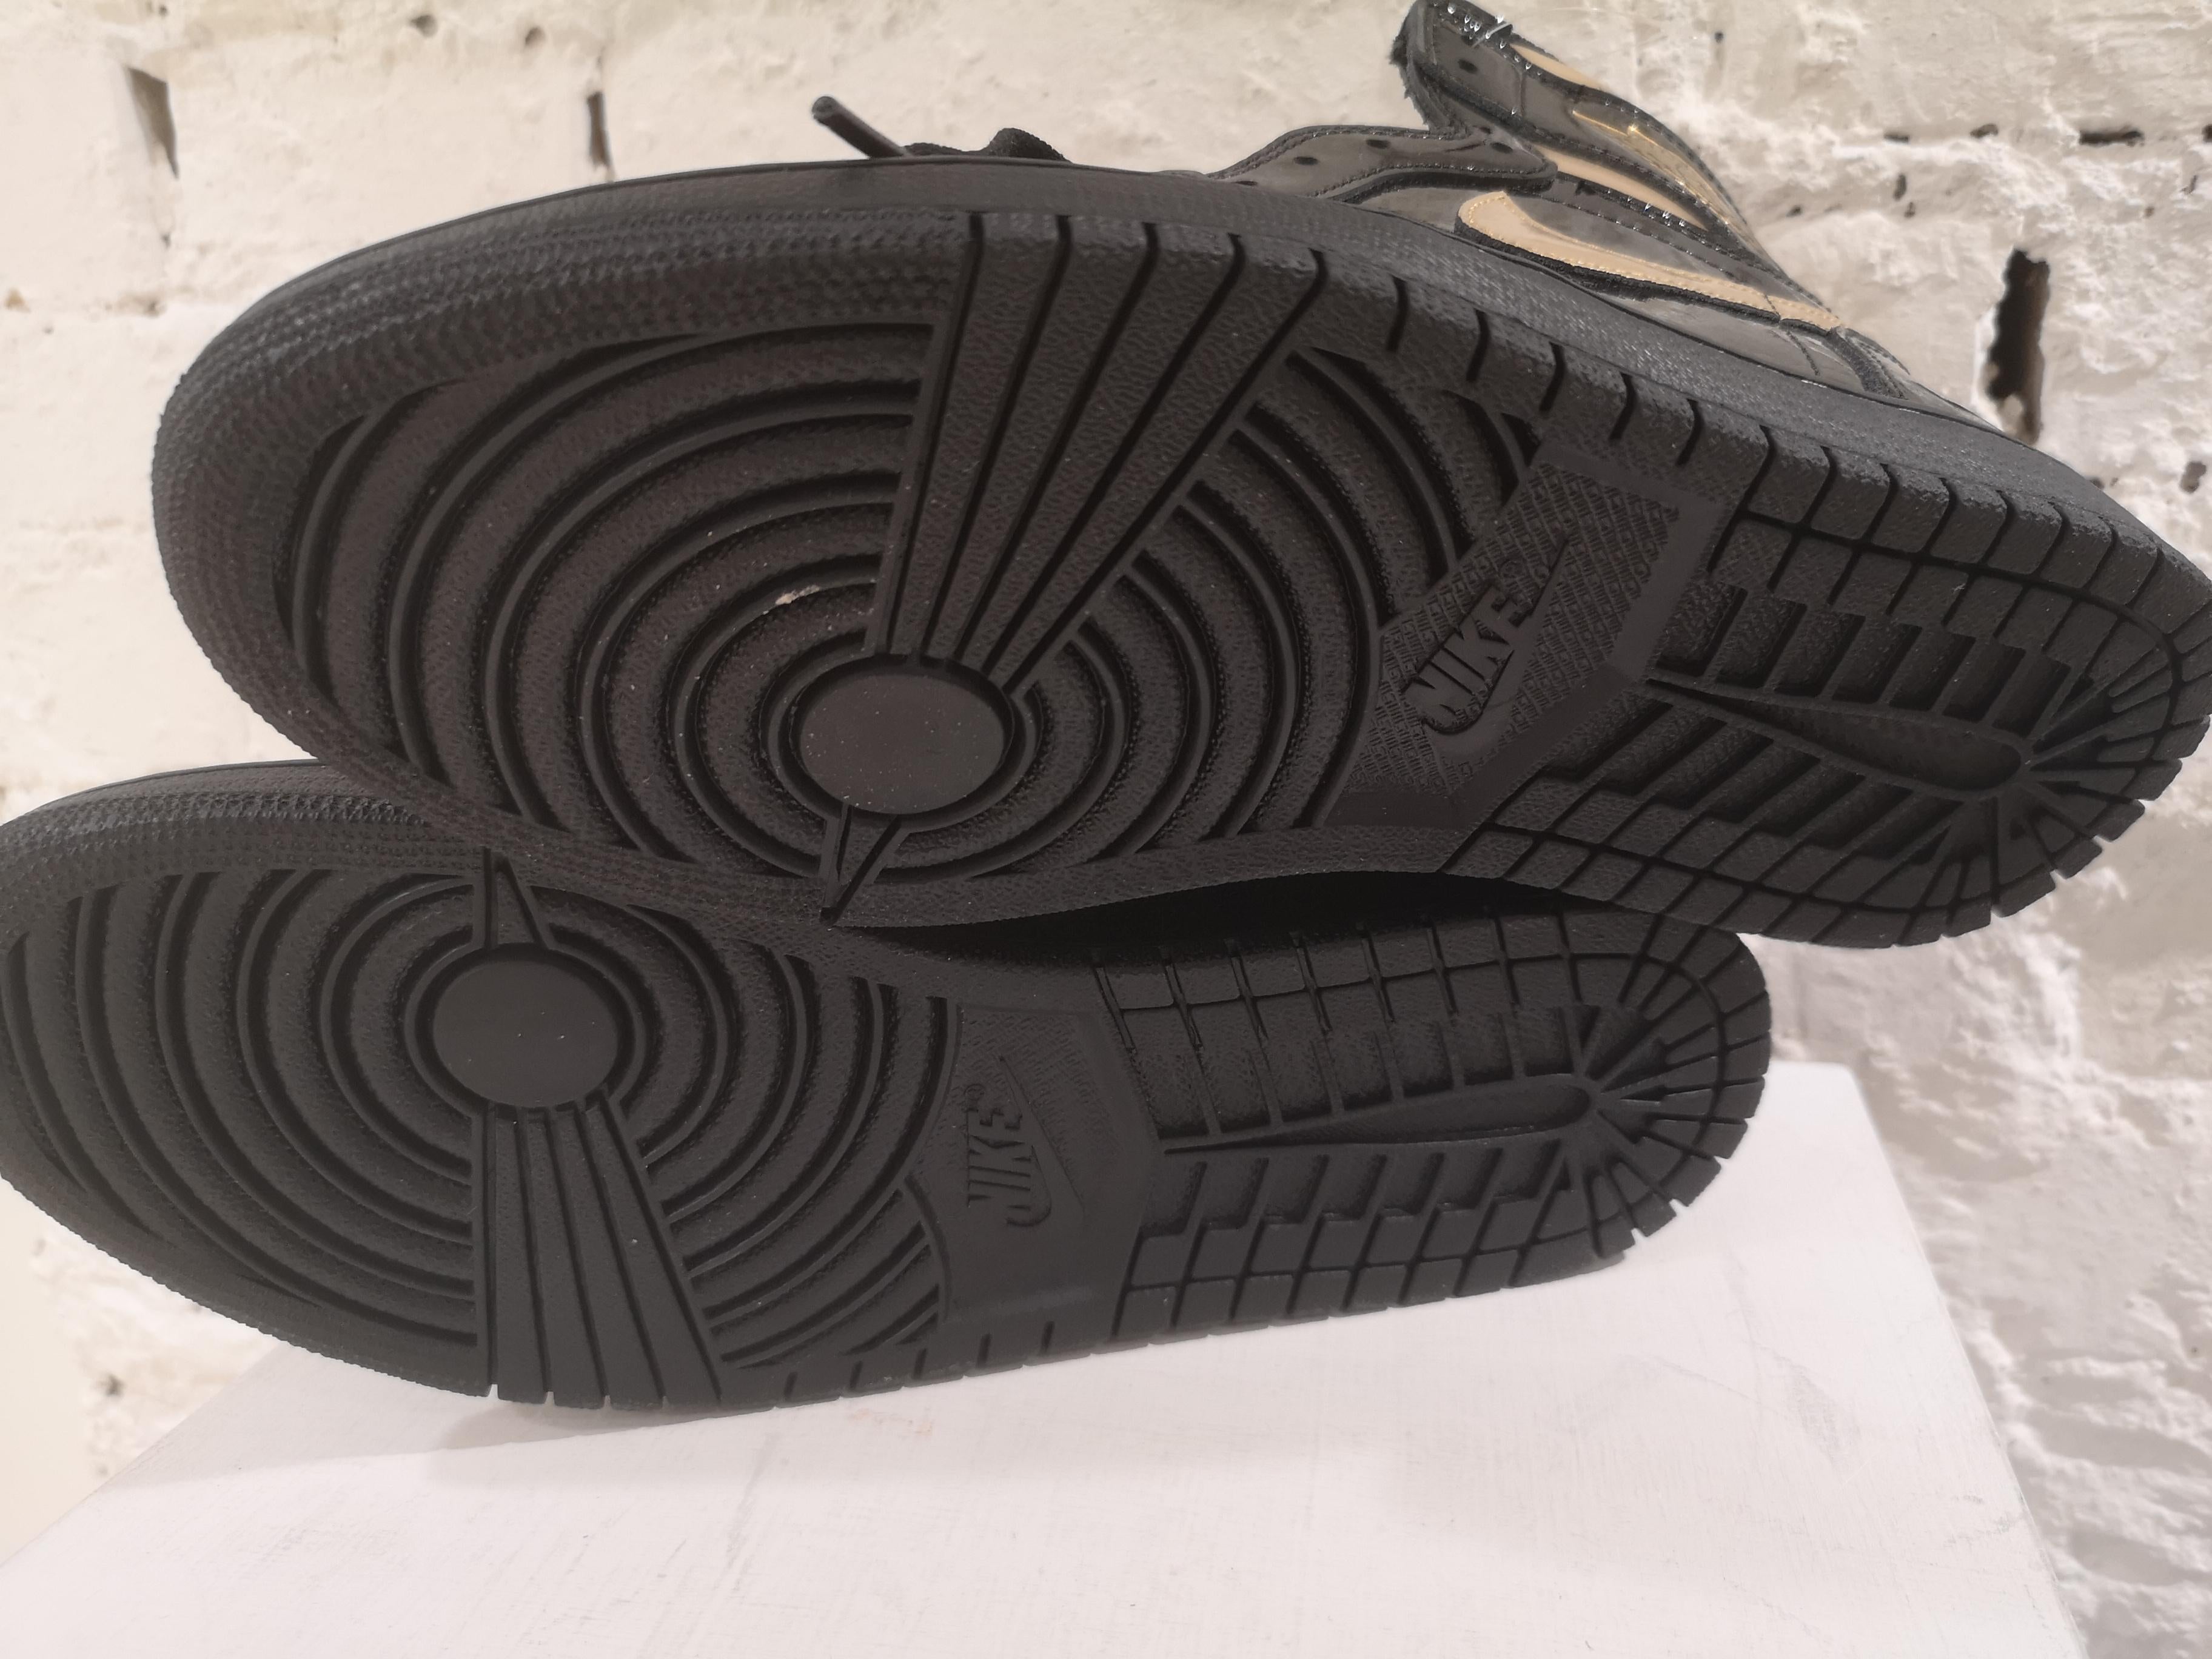 Black Air Jordan 1 High black metallic gold patent leather sneakers